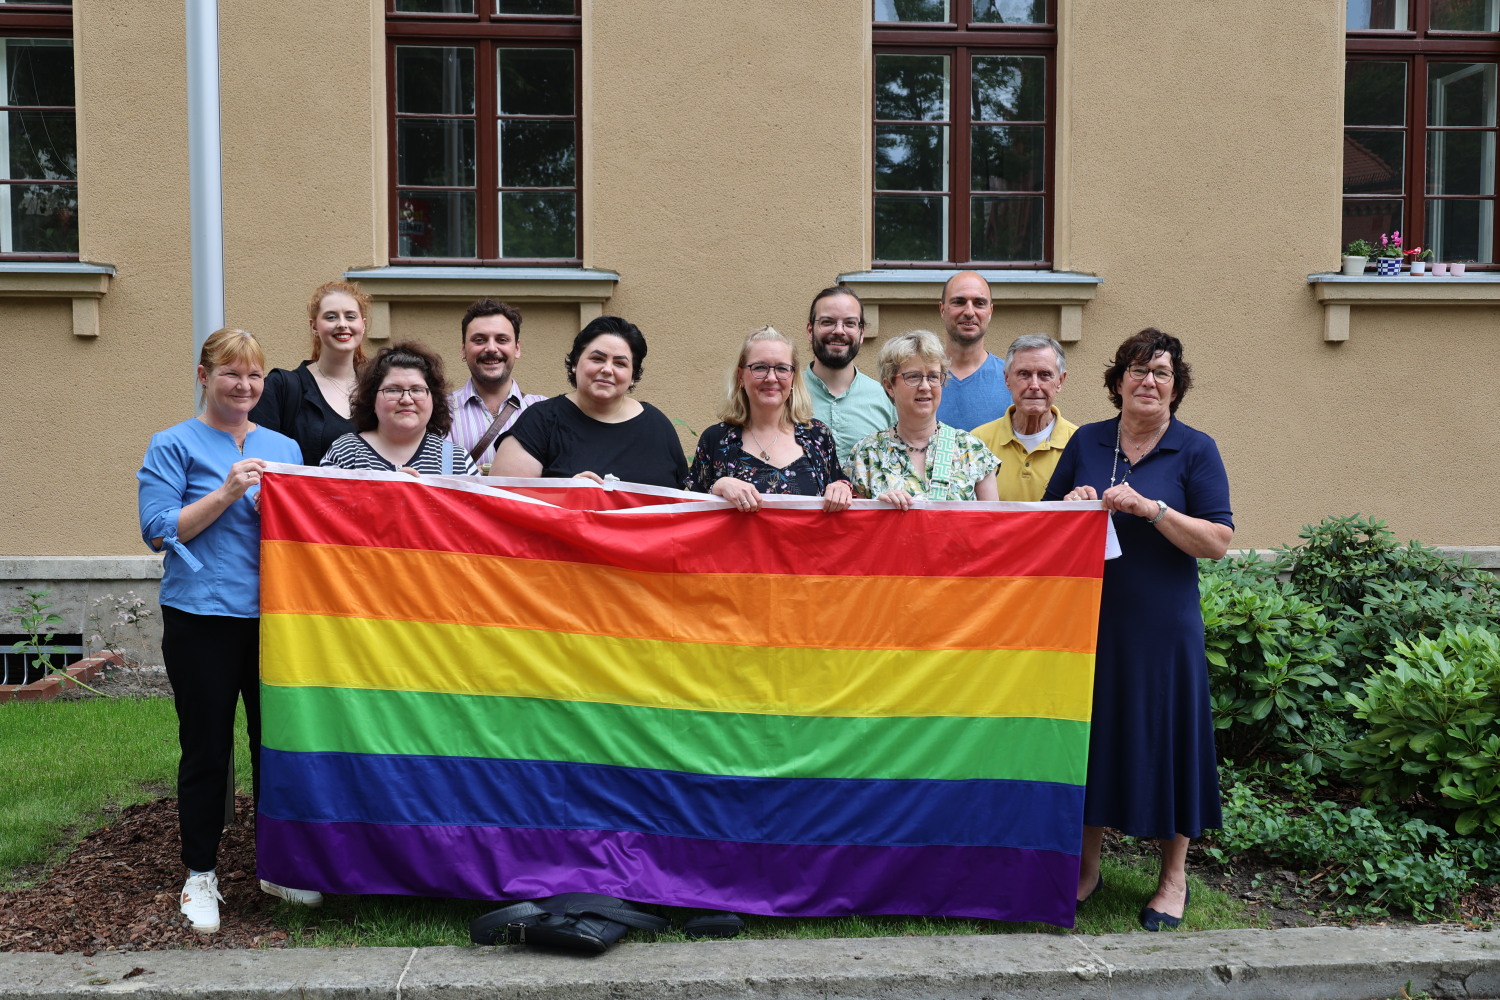 Bezirksverordnete der Grünen und SPD zusammen mit Bezirksstadträtin Carolina Böhm (vorne links) und Bezirksbürgermeisterin Maren Schellenberg (vorne rechts) mit einer Regenbogenflagge